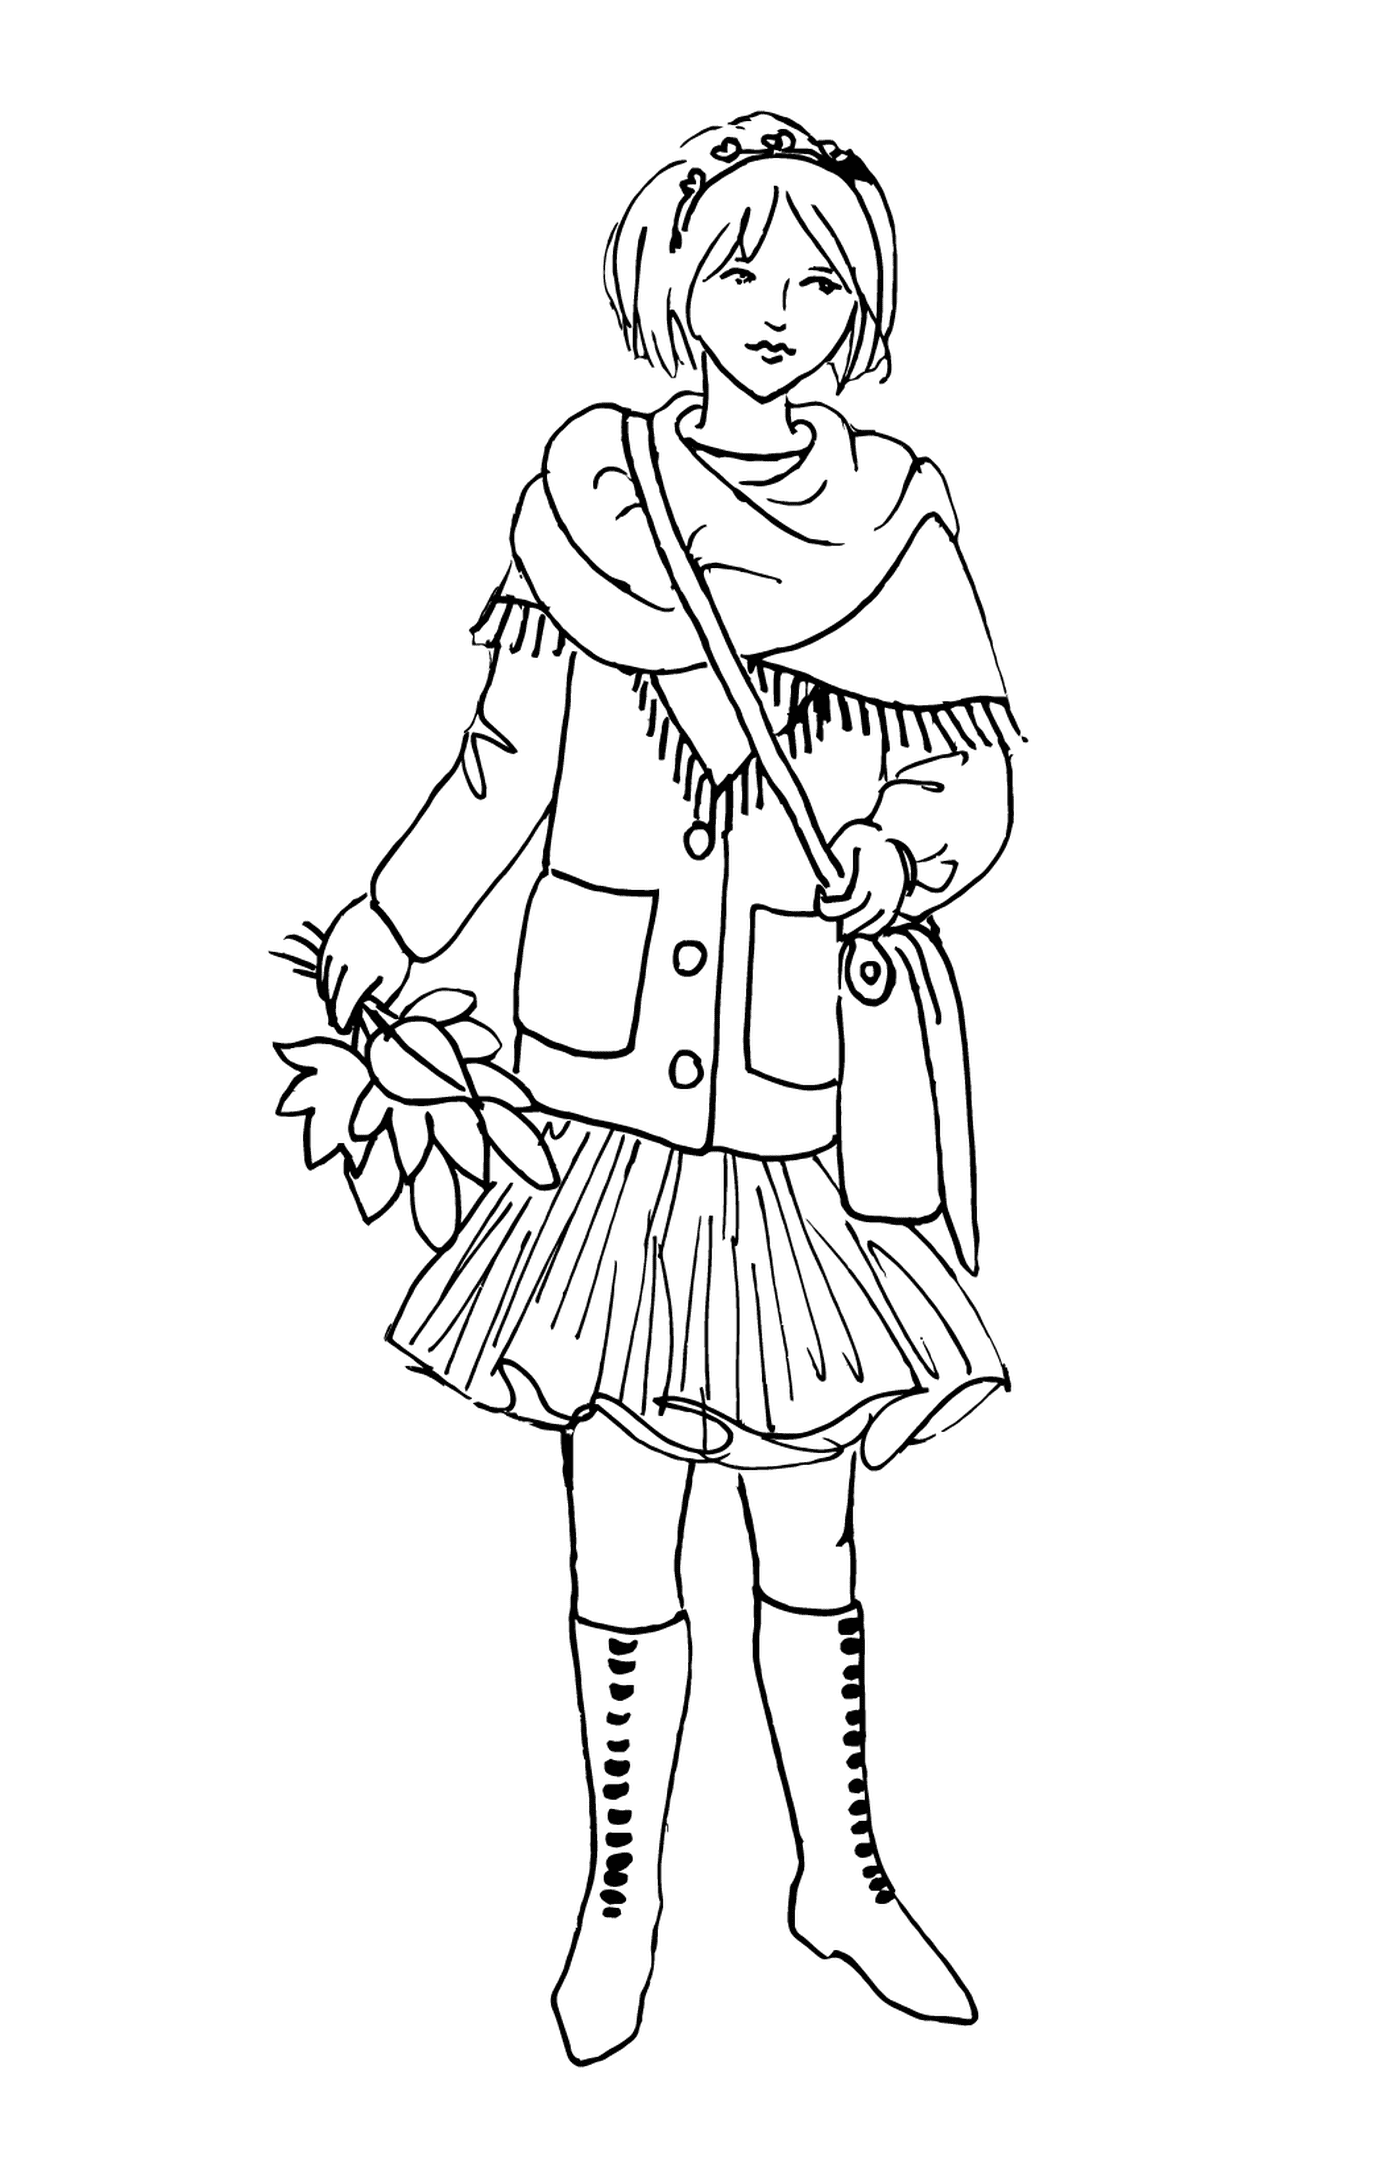  Una chica con ropa de invierno 